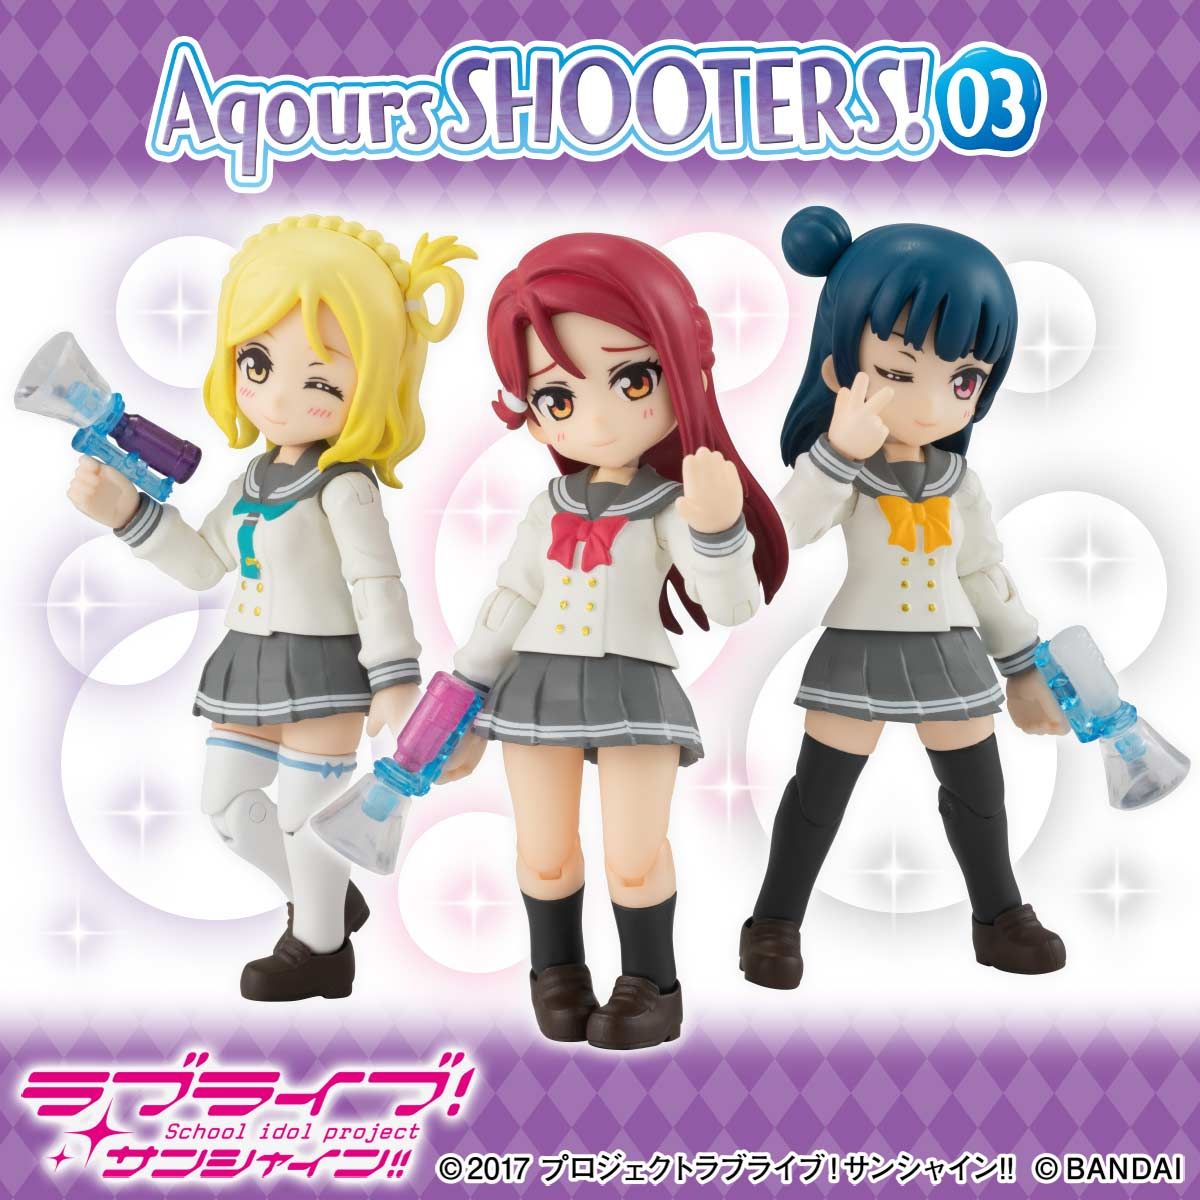 アクアシューターズ！『Aqours SHOOTERS！03』3個入りBOX-001